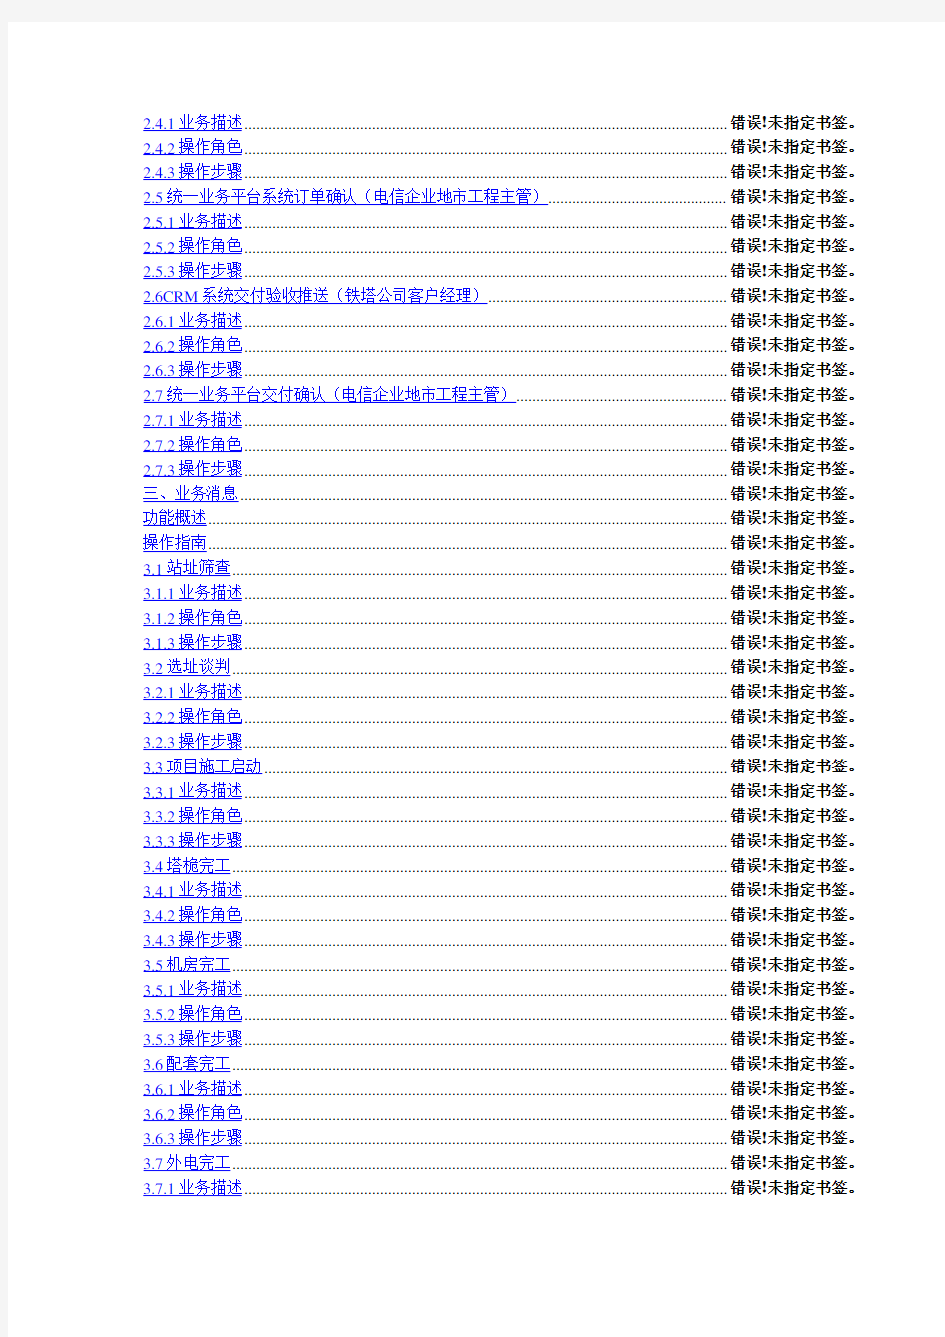 中国铁塔统一业务平台用户操作手册